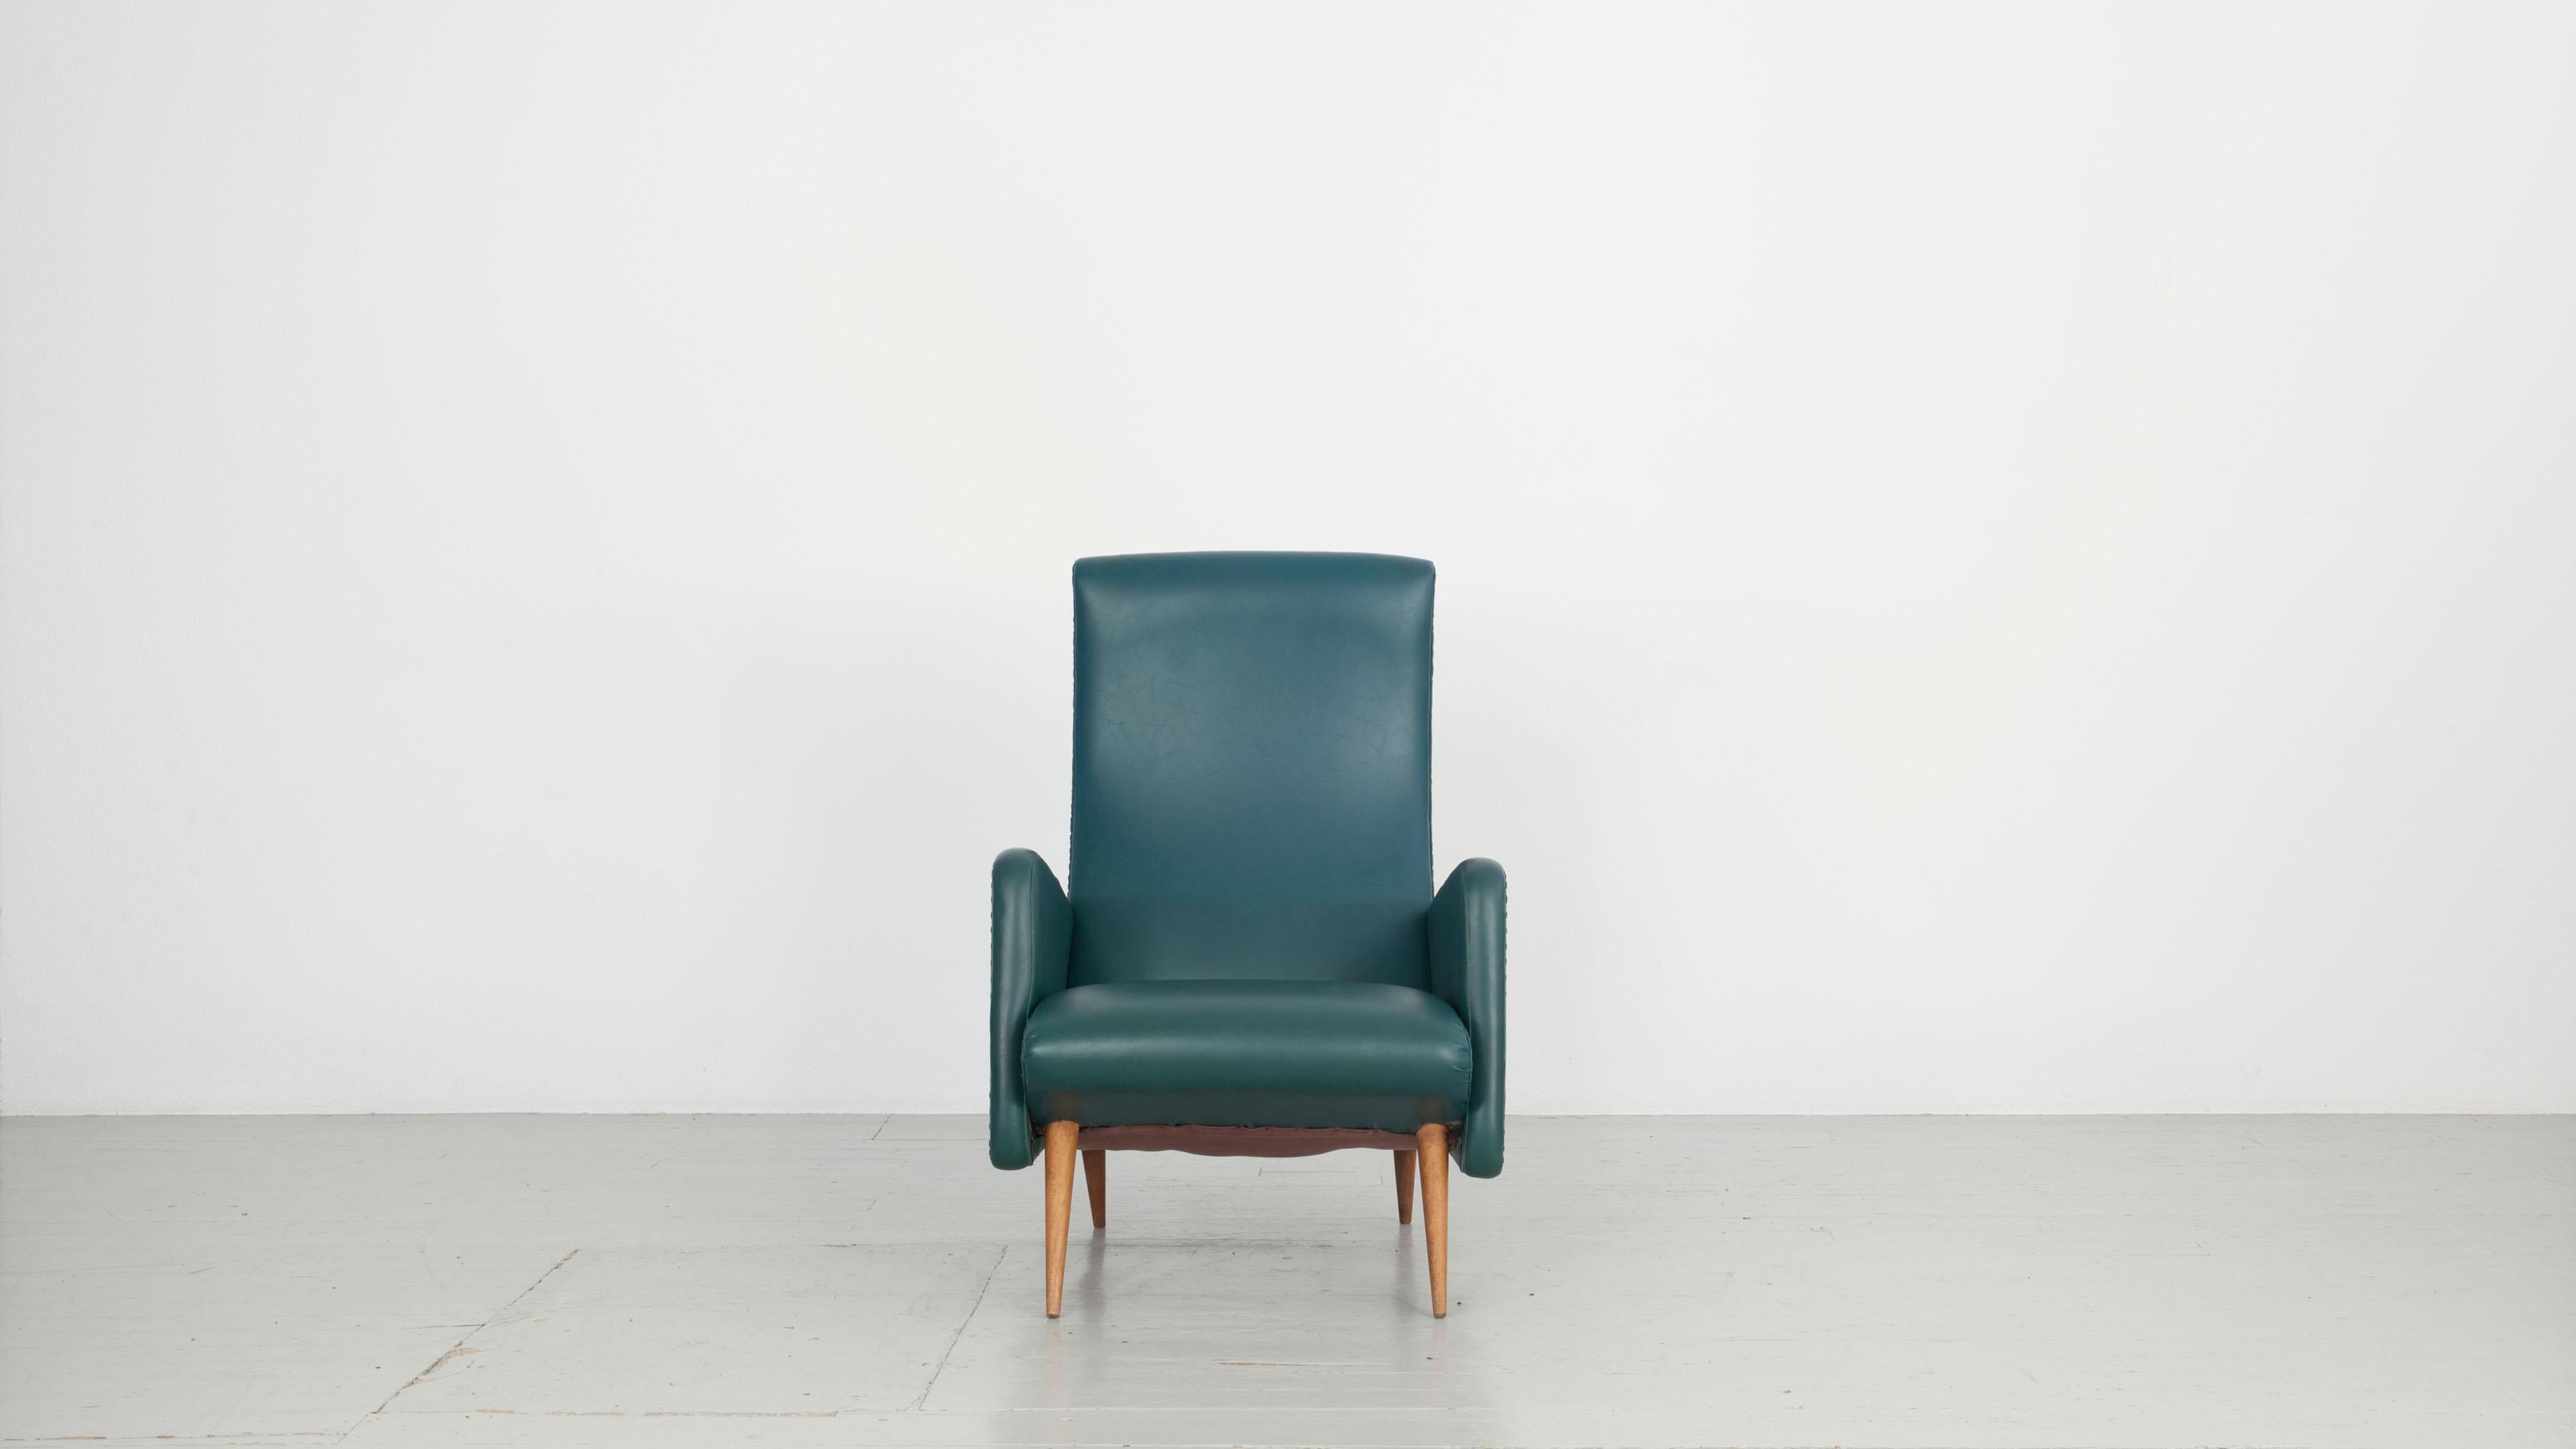 Dieses Paar italienischer Sessel aus den 1950er Jahren wurde von Cassina hergestellt. Sie sind mit petrolfarbenem Kunstleder bezogen, das ein Originalbezug ist, der in sehr gutem Zustand ist. Die spitzen Holzbeine der Sessel sind ebenfalls in gutem